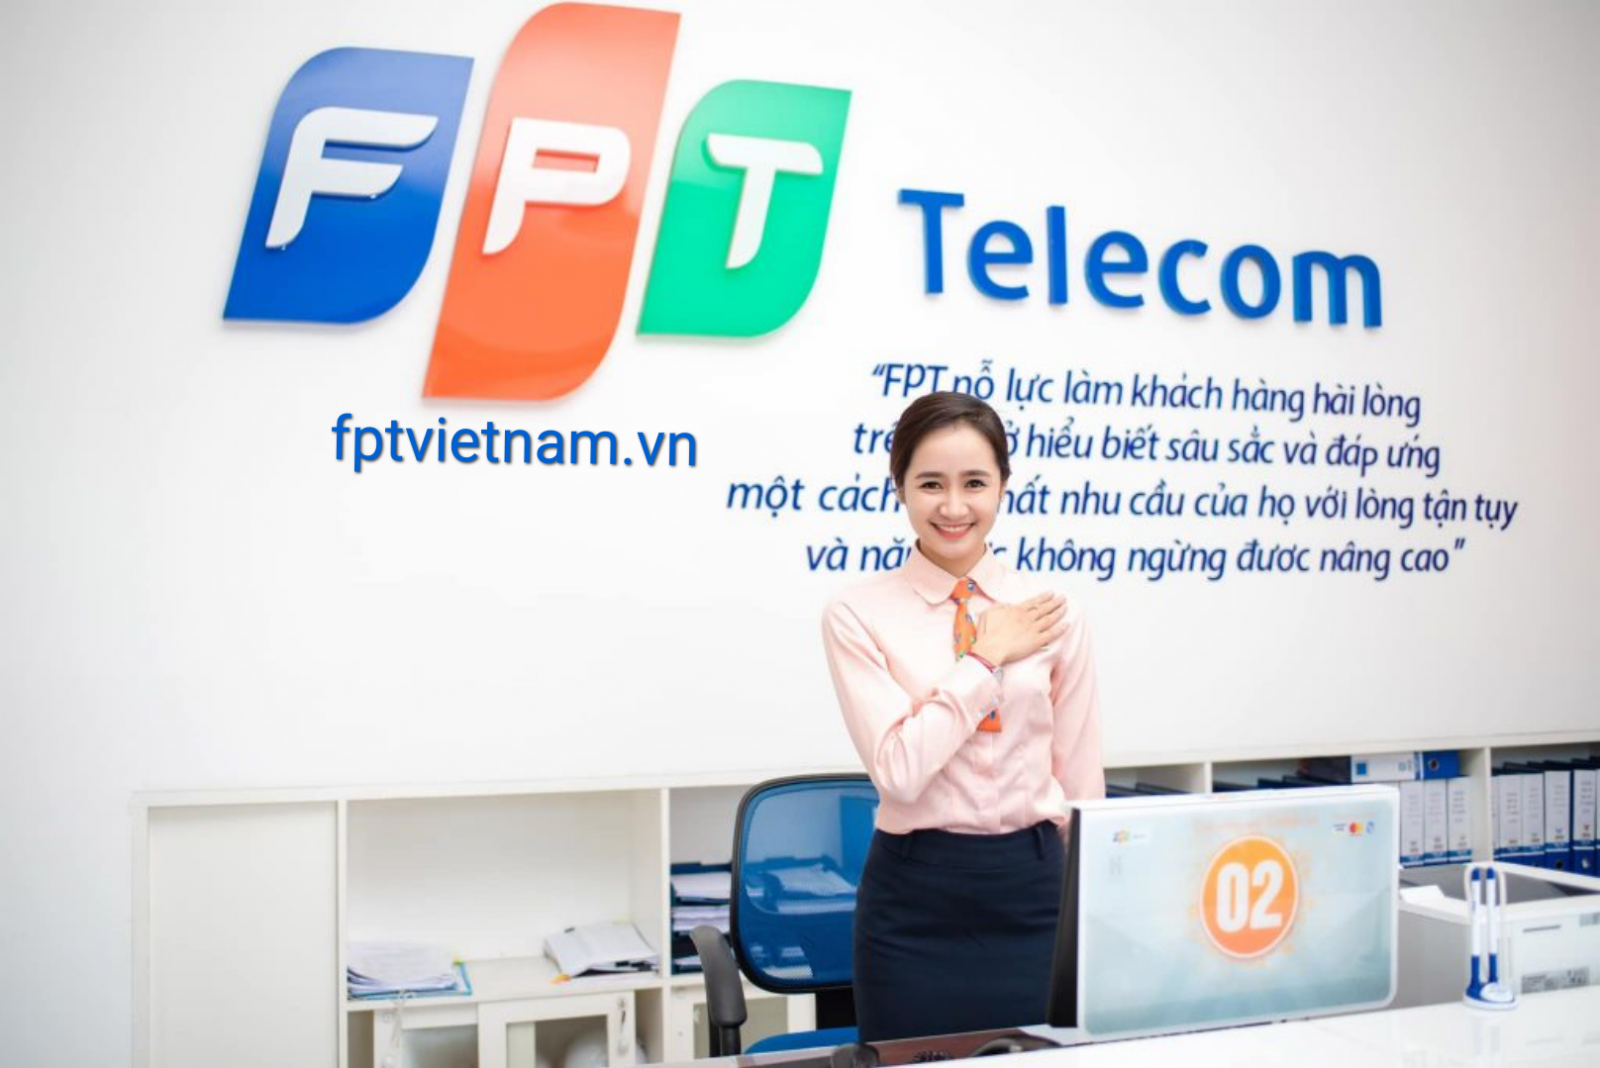 dịch vụ fpt telecom Bình Thuận